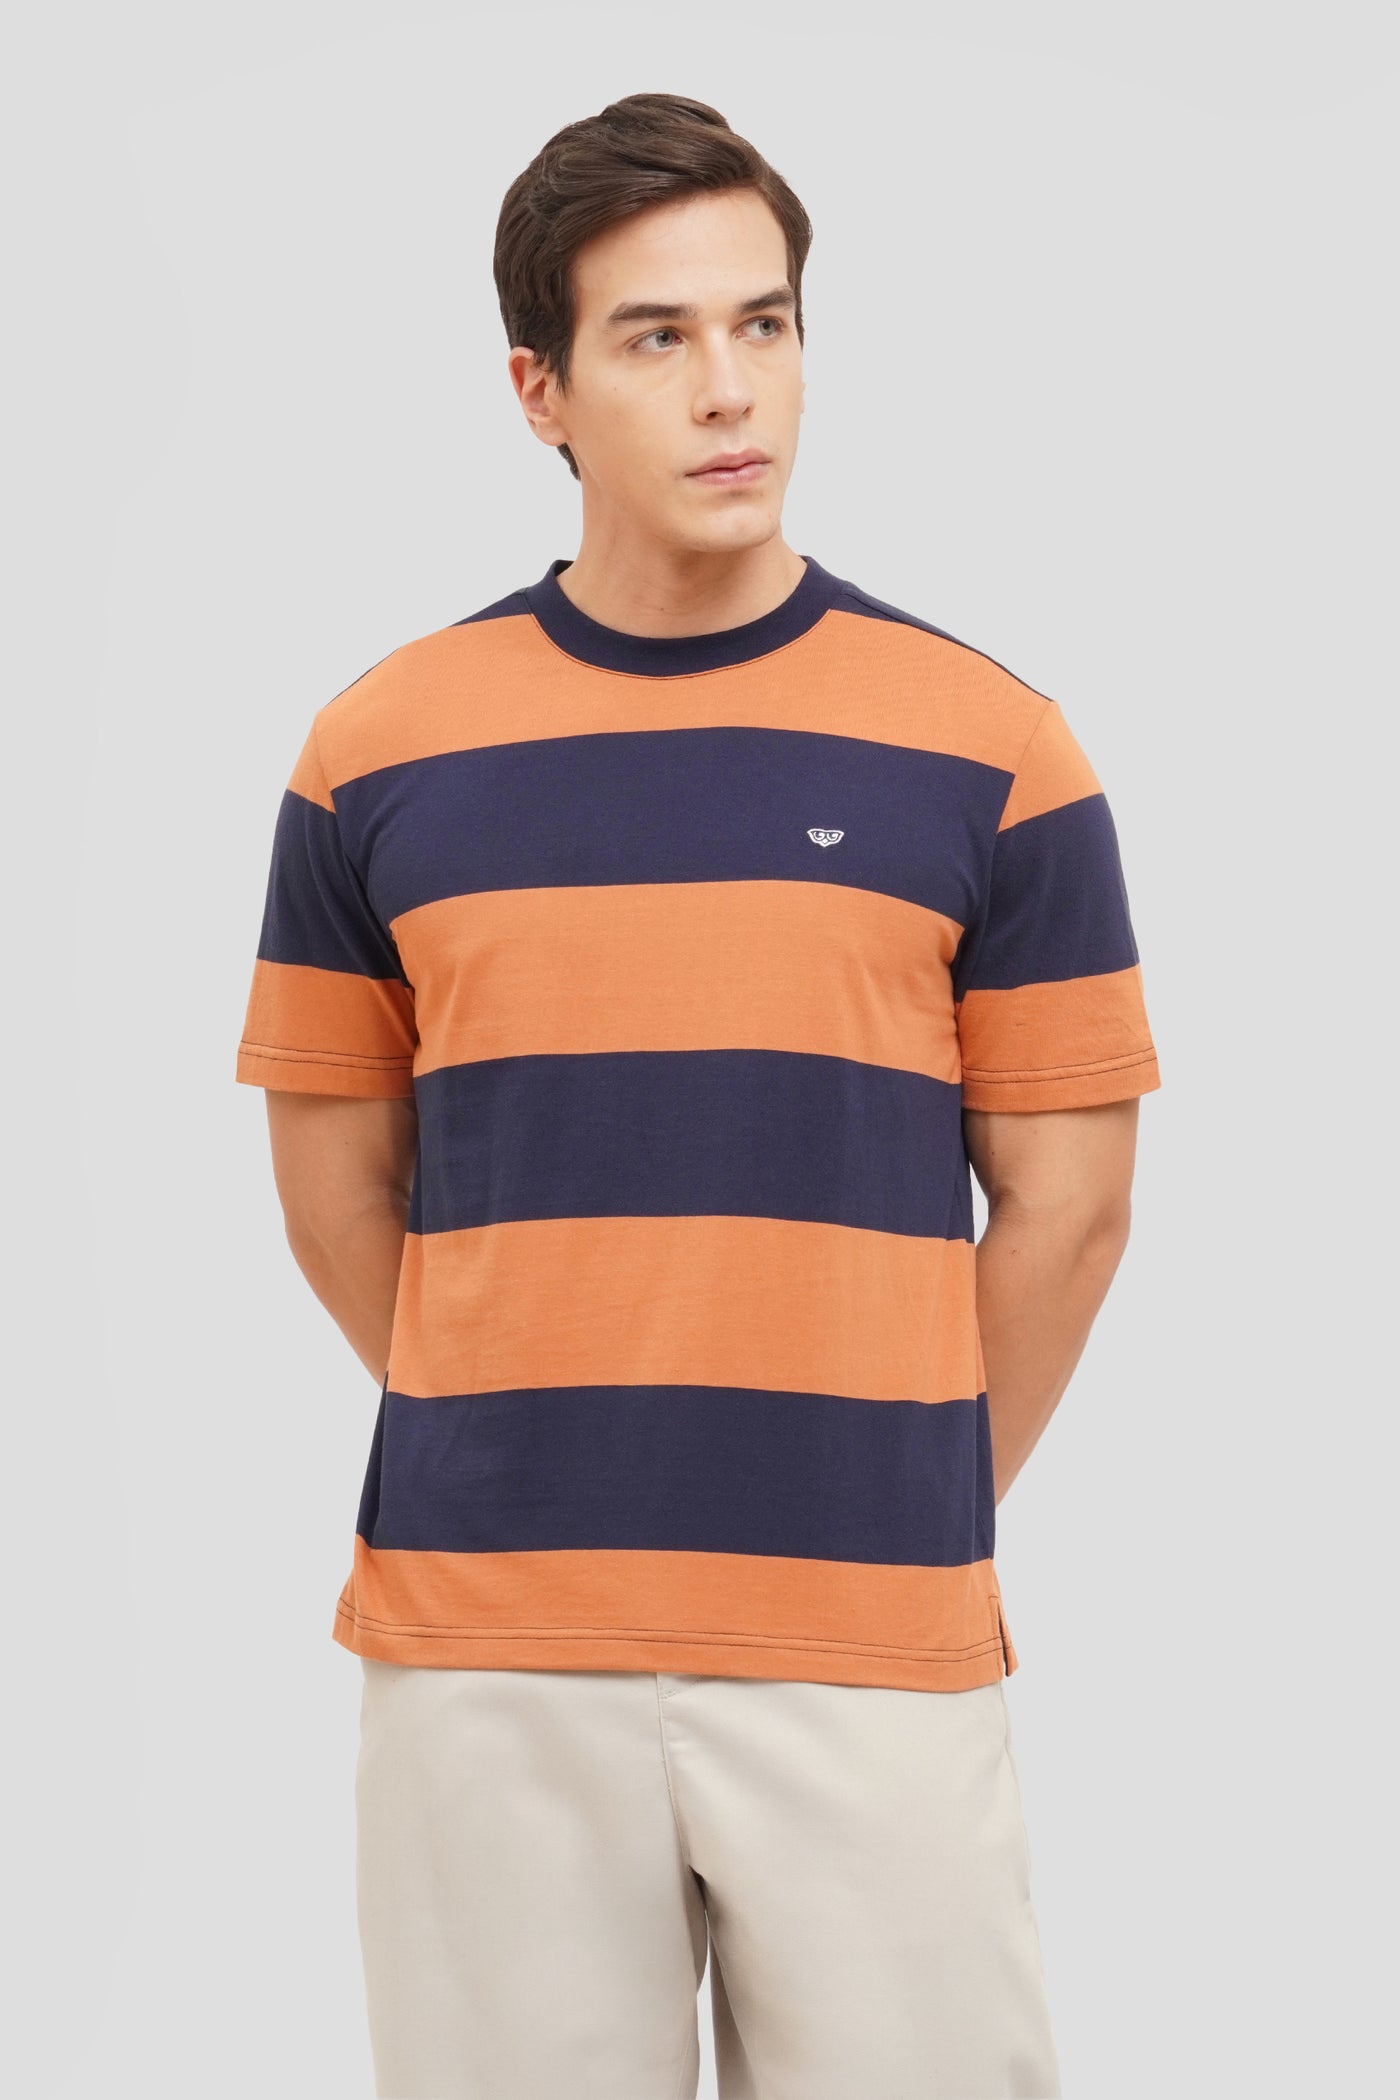 Striped Ringer Short Sleeve T-Shirt